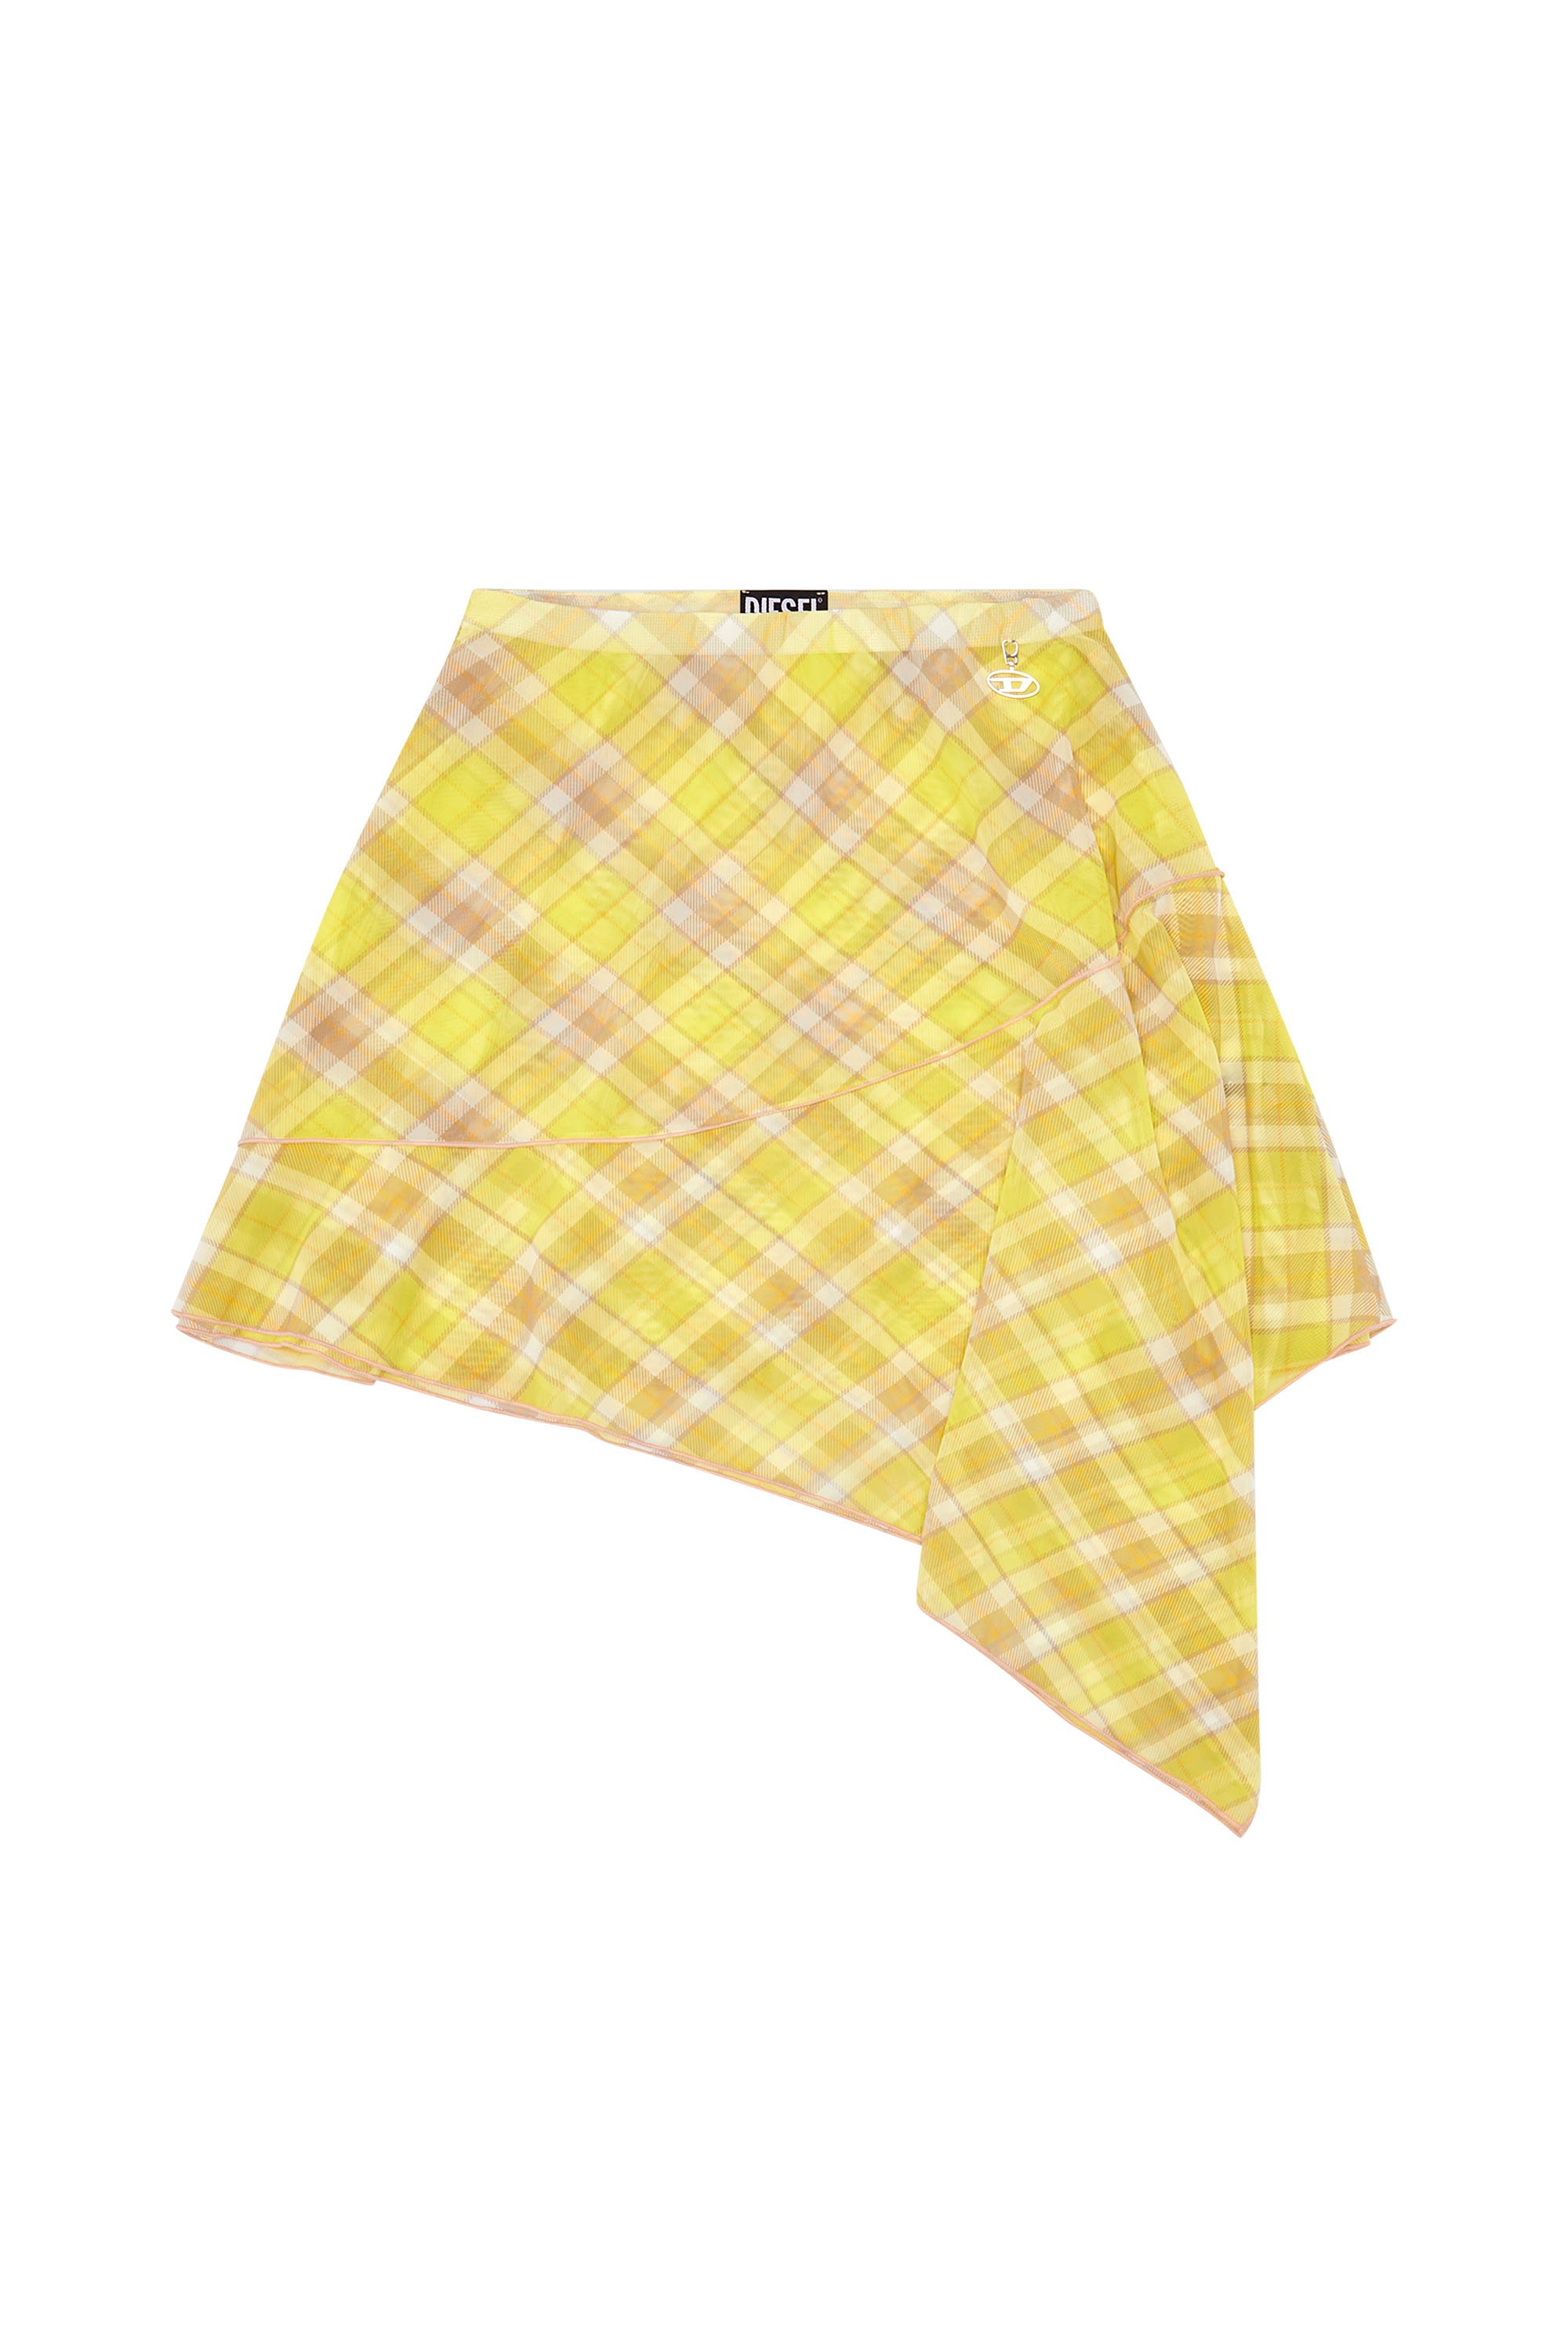 O-SALLY, Yellow - Skirts